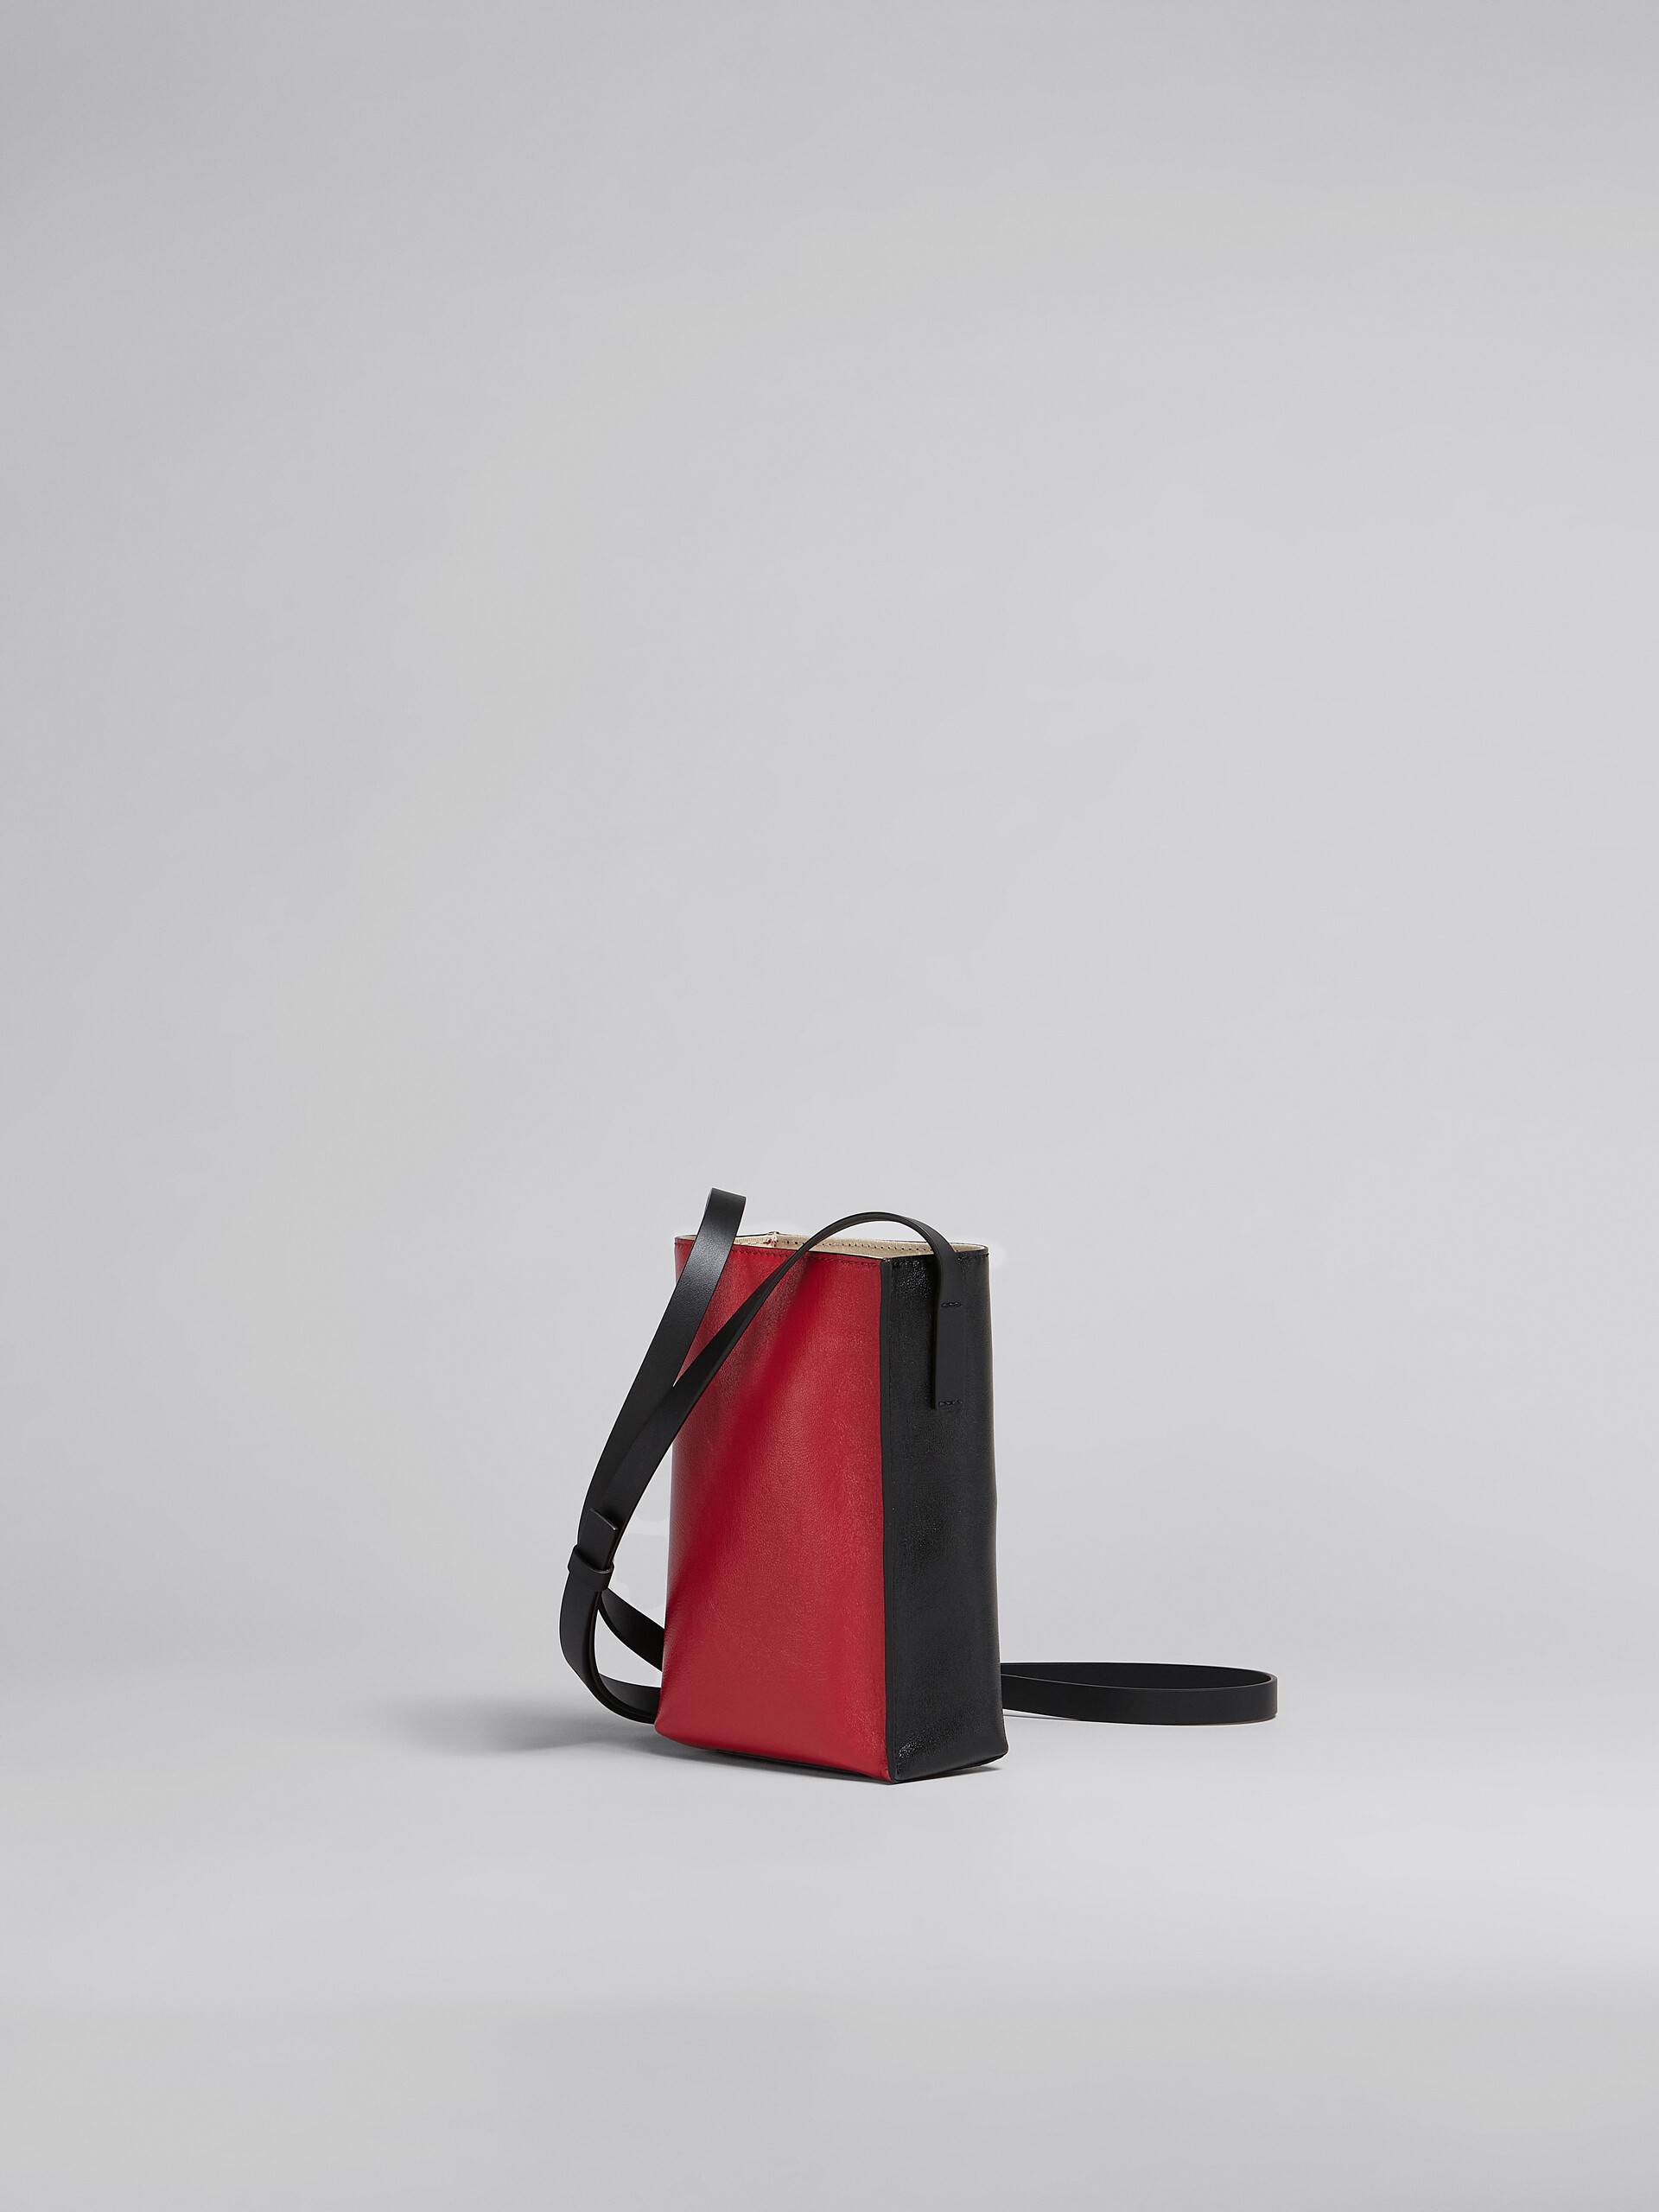 Petit sac Museo Soft en cuir noir et rouge - Sacs portés épaule - Image 3